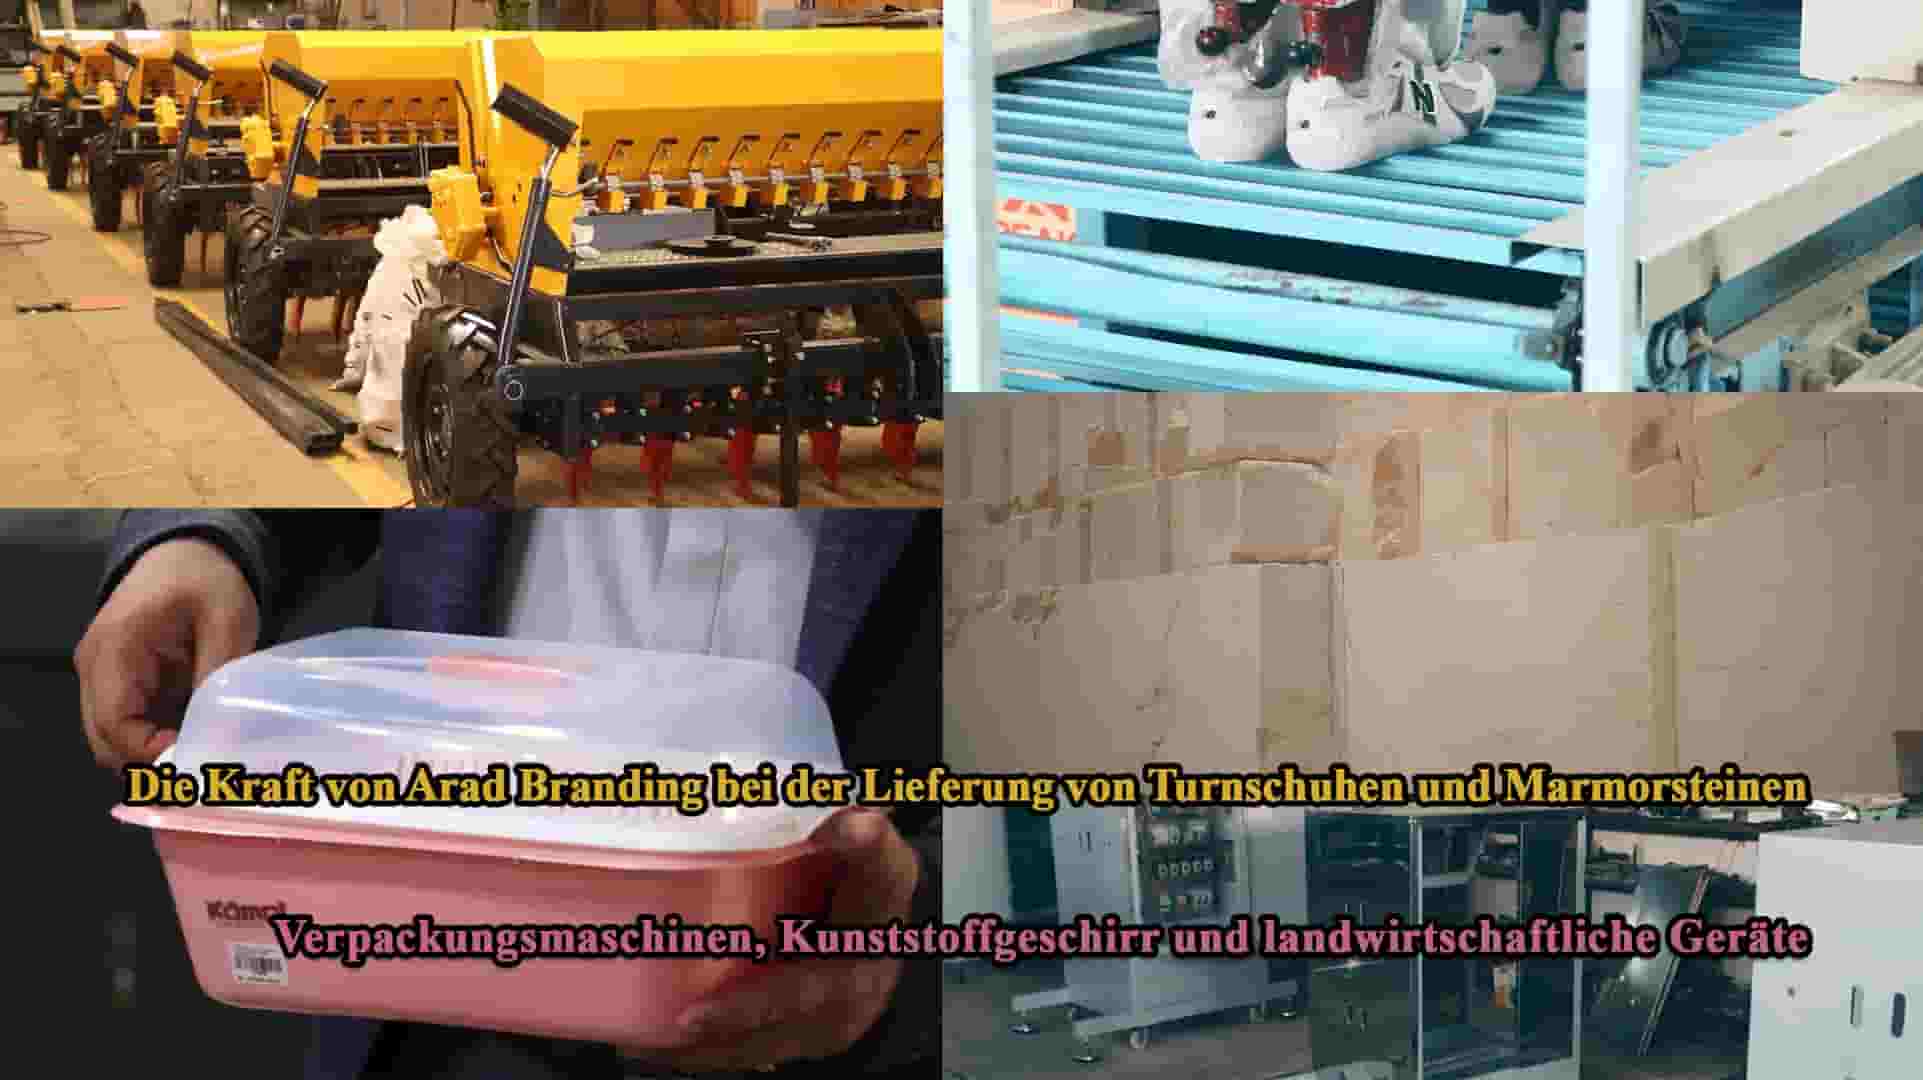 Die Stärke von Arad Branding bei der Lieferung von Turnschuhen, Marmorsteinen, Verpackungsmaschinen, Kunststoffgeschirr und landwirtschaftlicher Ausrüstung